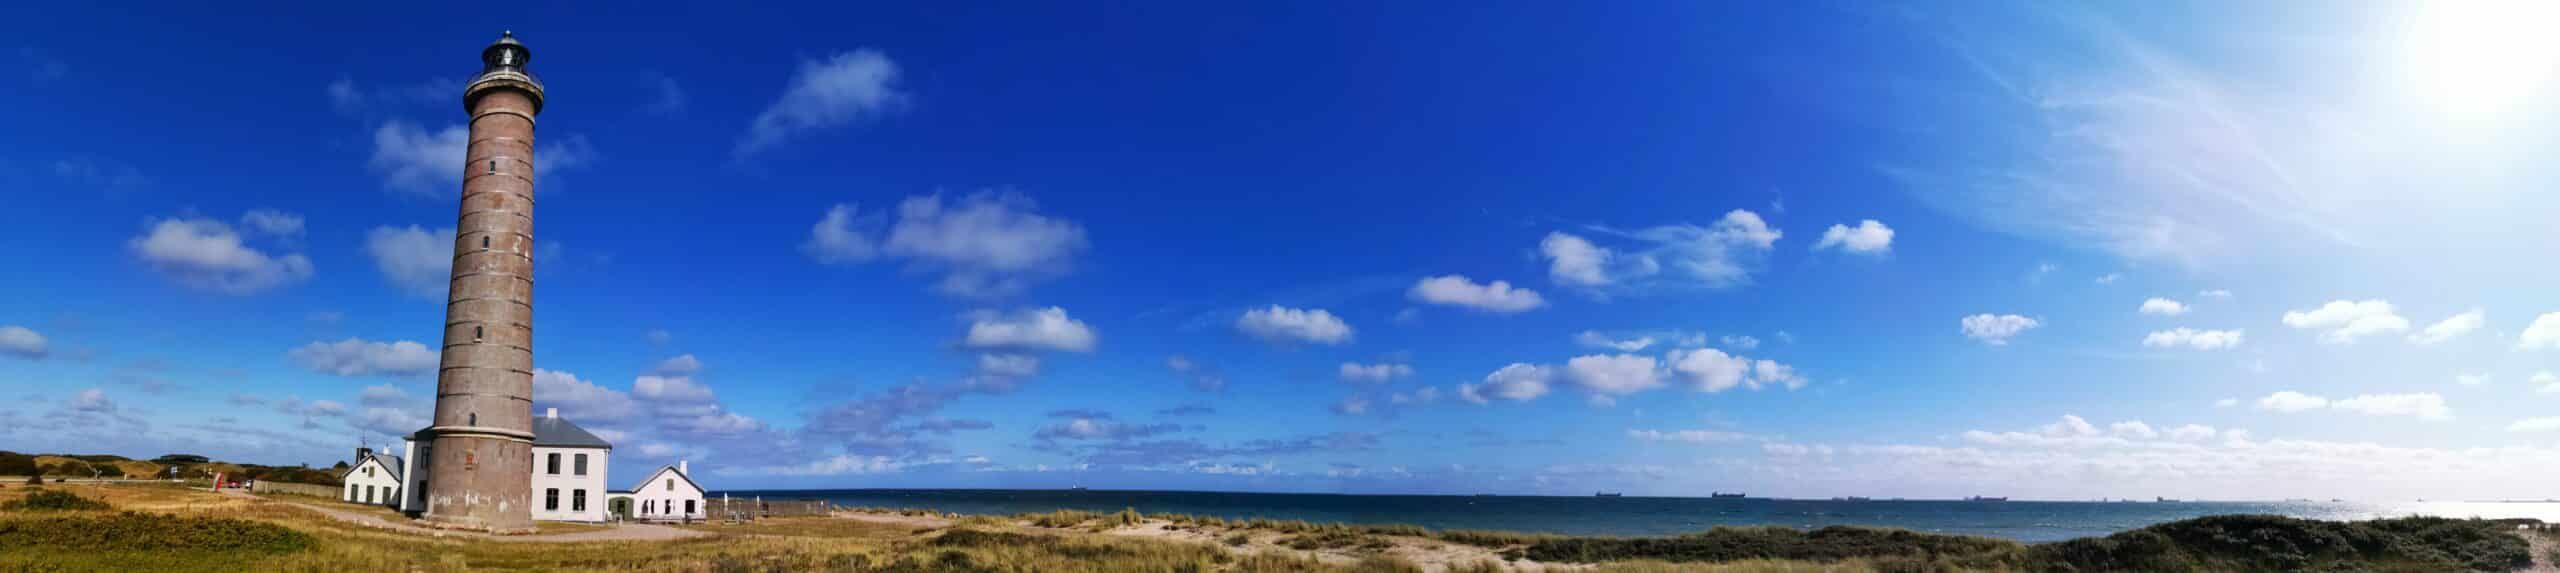 Ein Leuchtturm an einem Strand mit blauem Himmel.